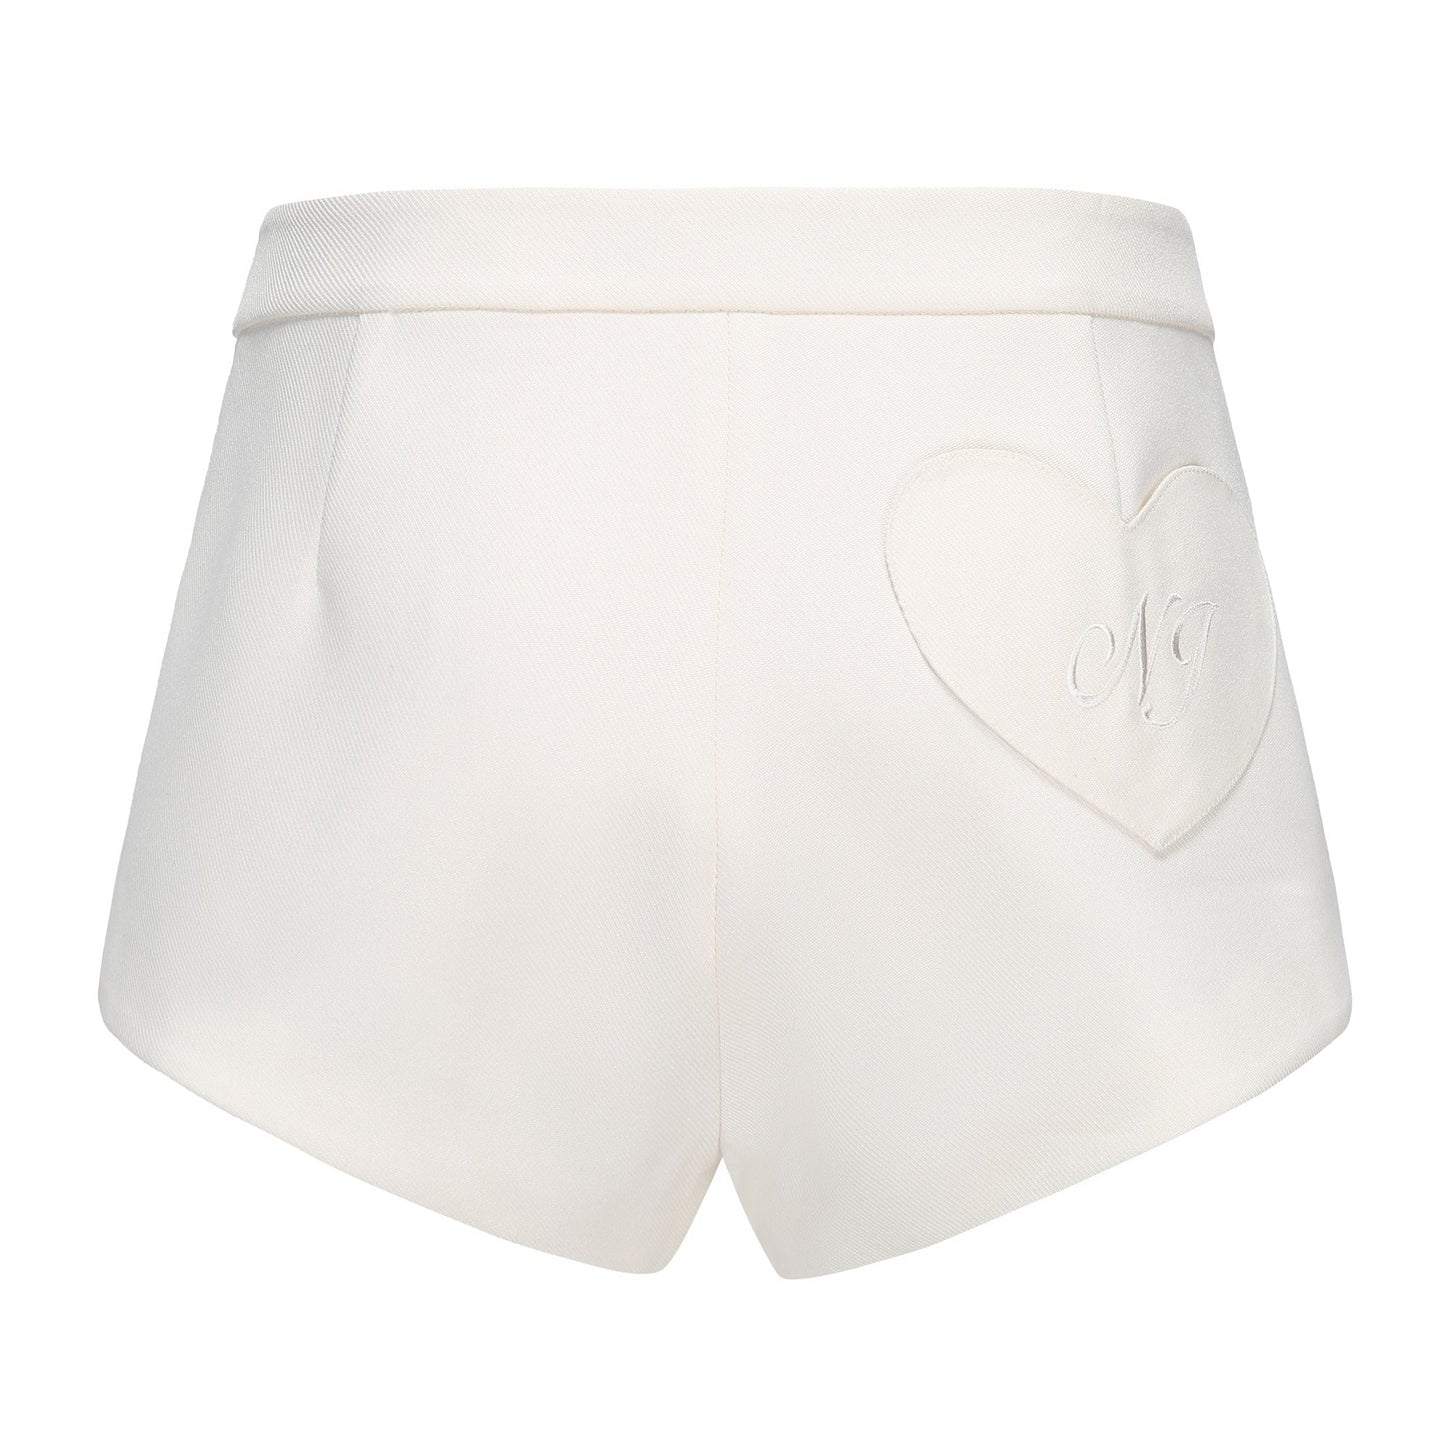 Annica Blazer + Luciana Shorts Set (White)